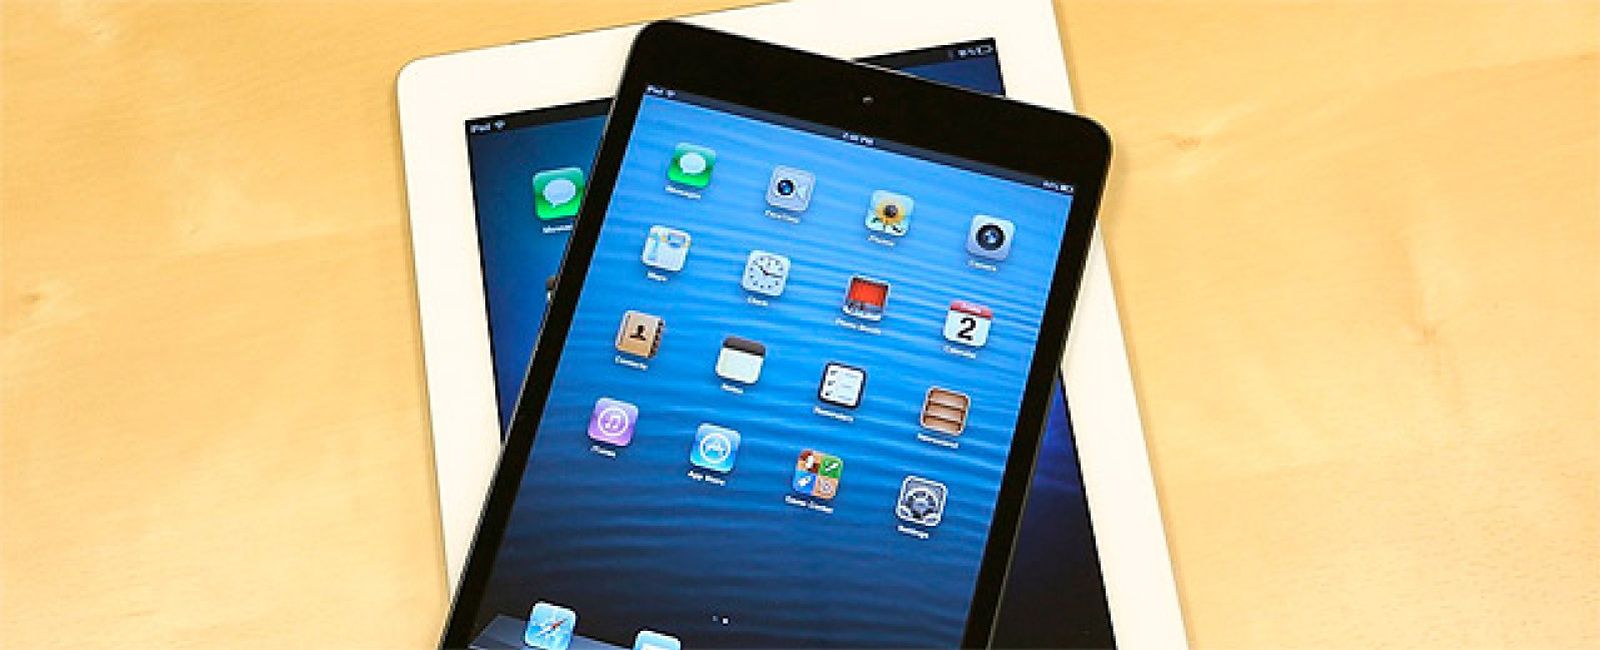 Foto: iPad o iPad Mini, ¿cuál es el mío?